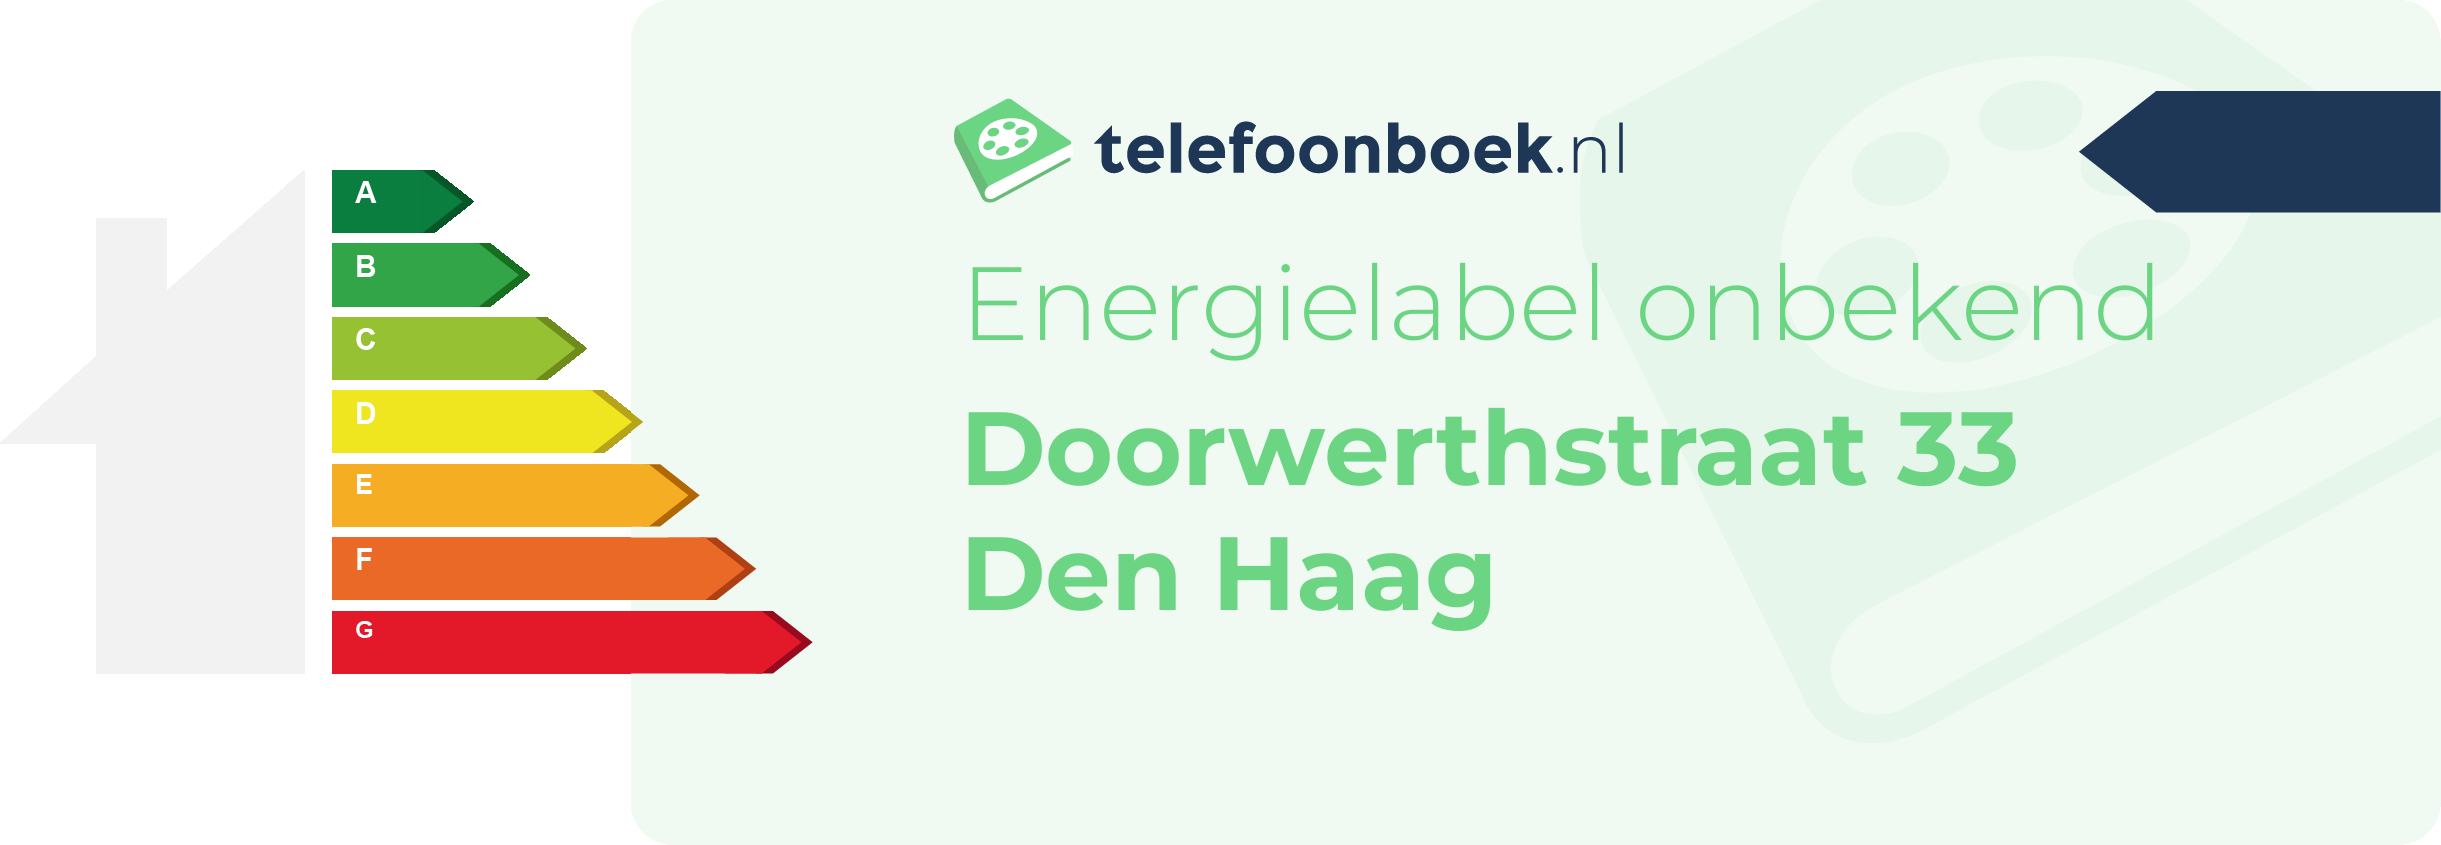 Energielabel Doorwerthstraat 33 Den Haag